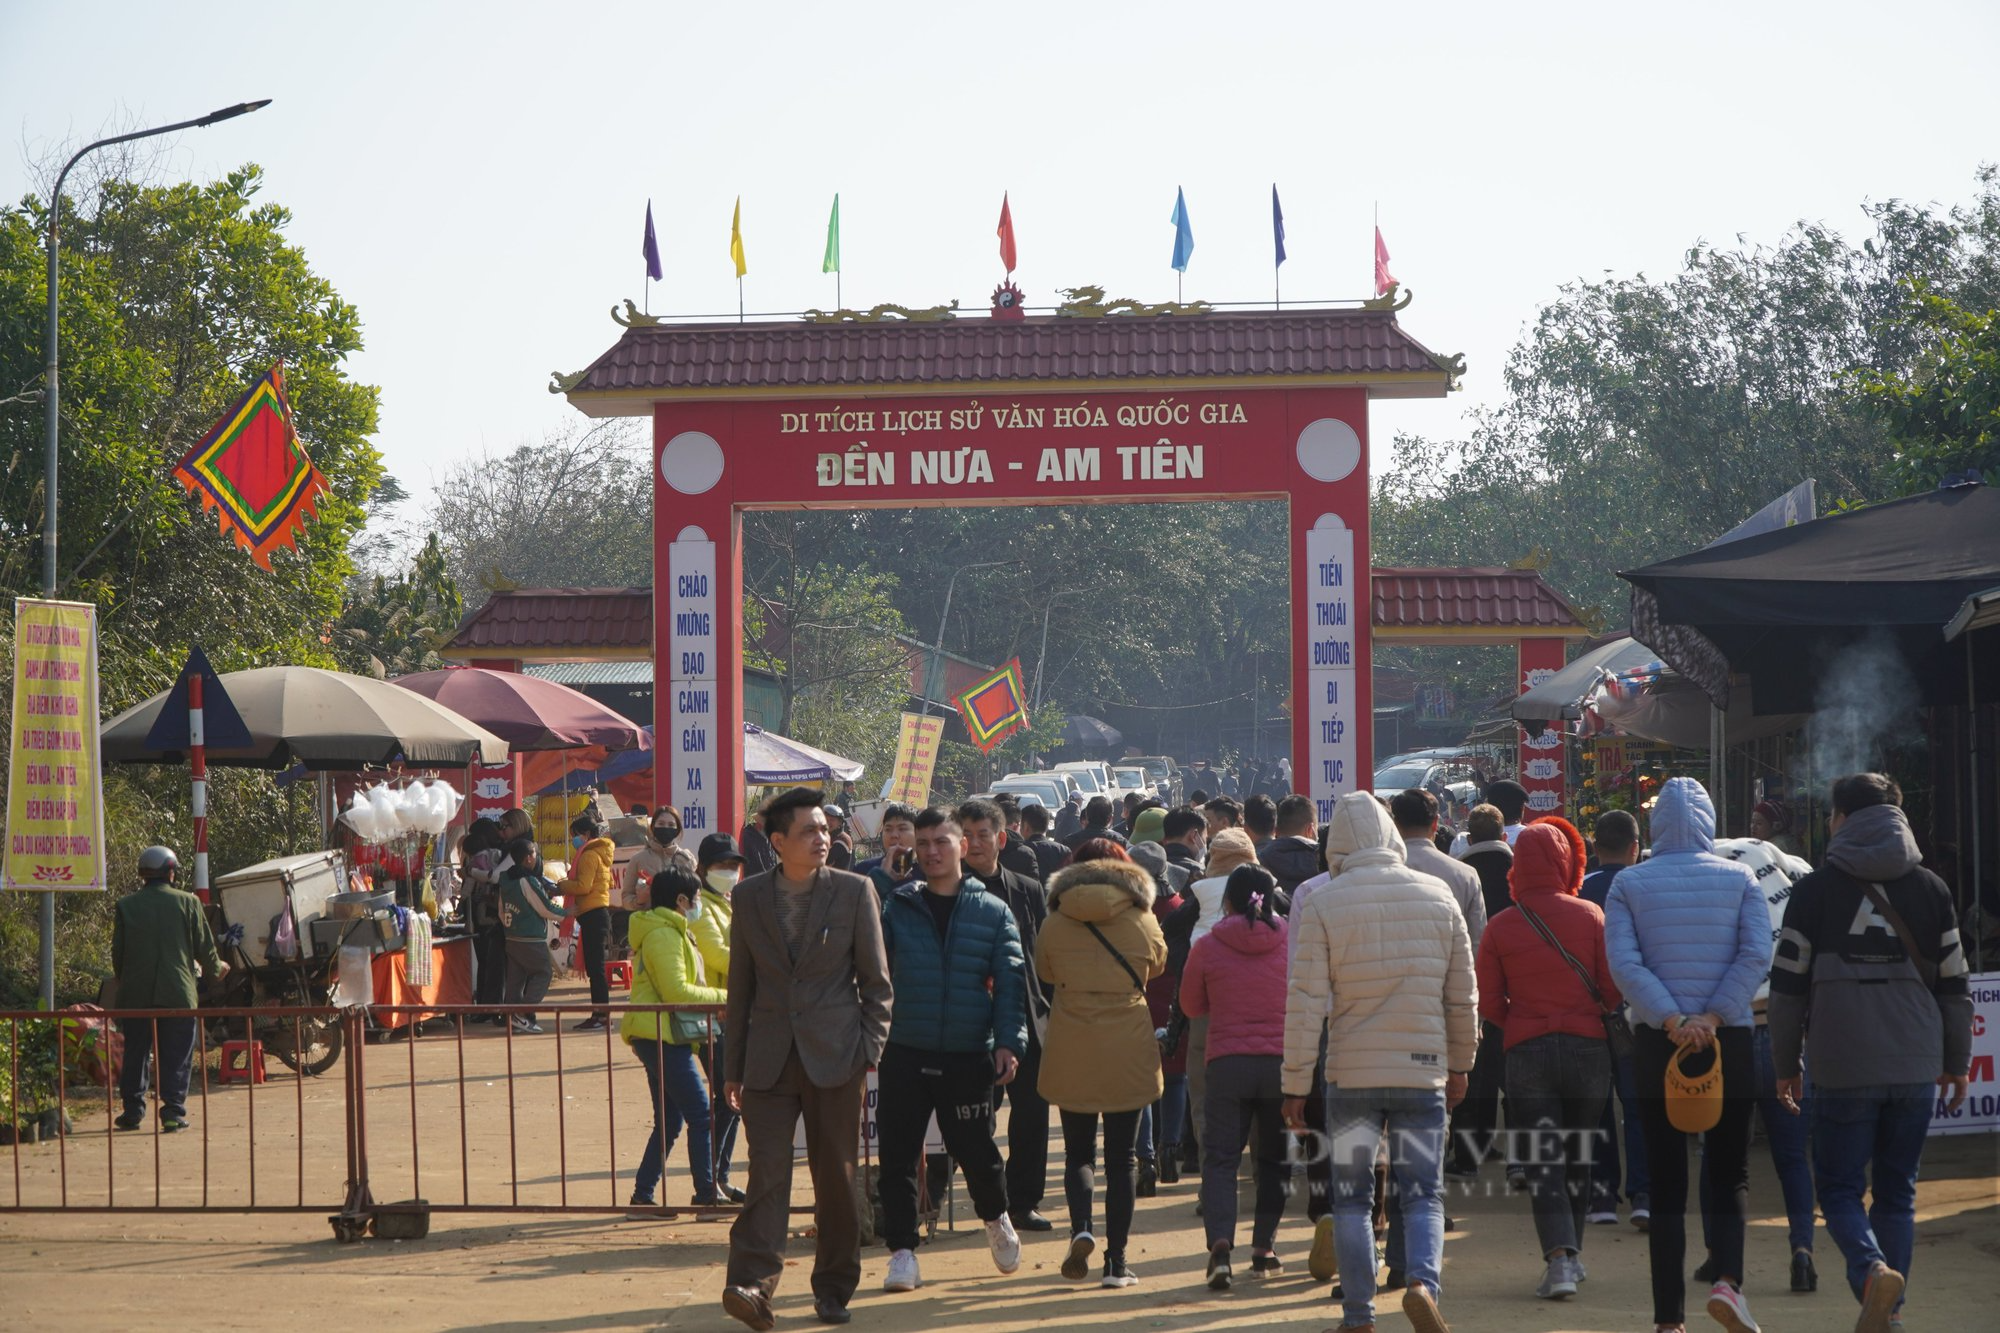 Thanh Hoá: Hàng ngàn du khách đổ về đền Nưa - Am Tiên xem ngày “mở cổng trời” - Ảnh 9.